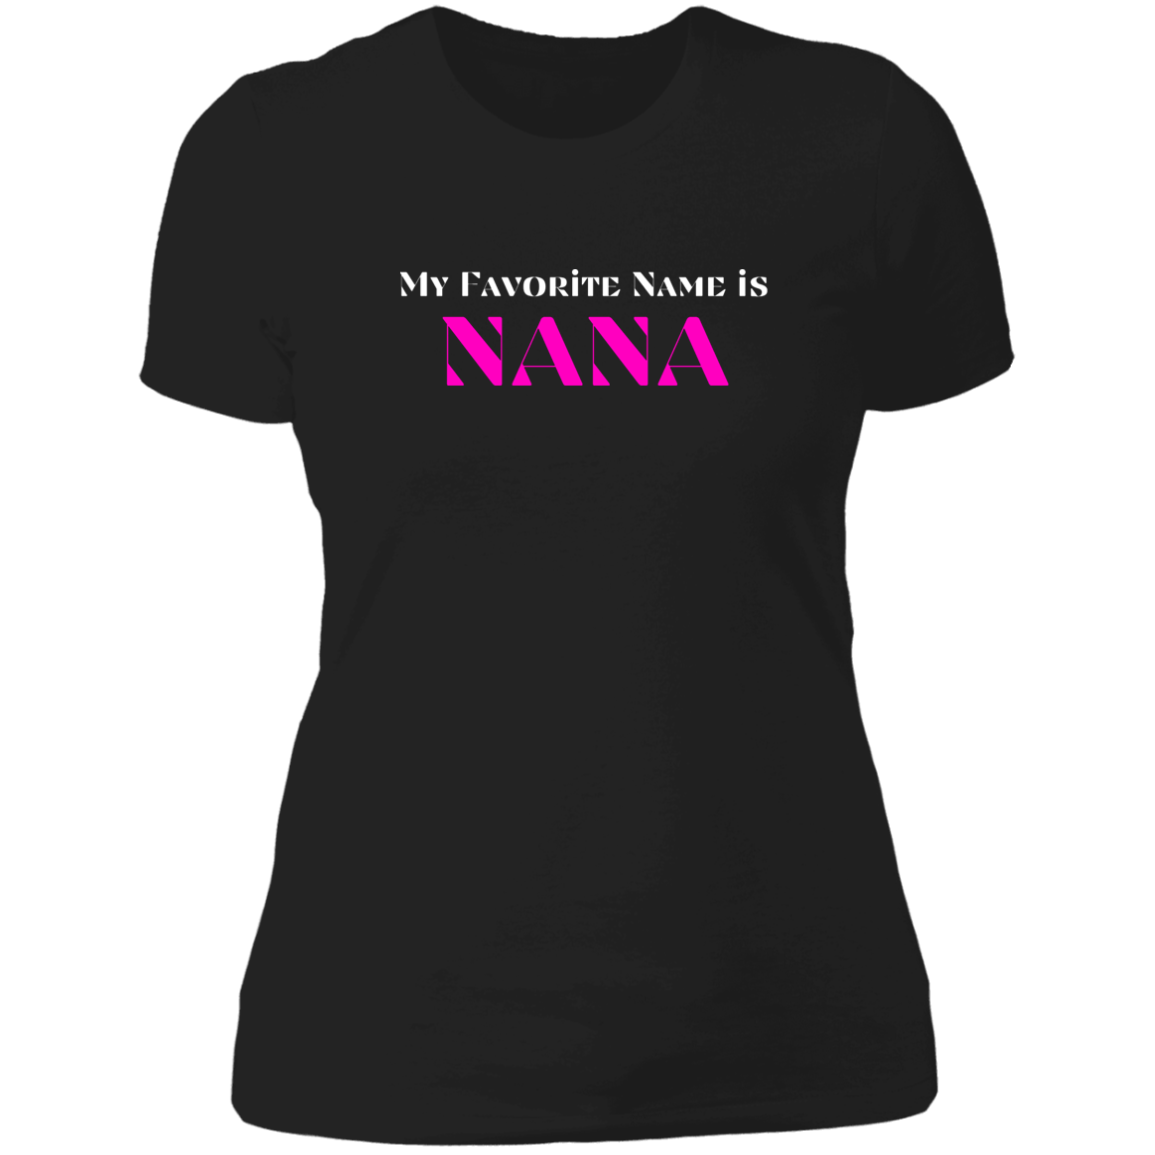 My Favorite Name is NANA! Women's Tee